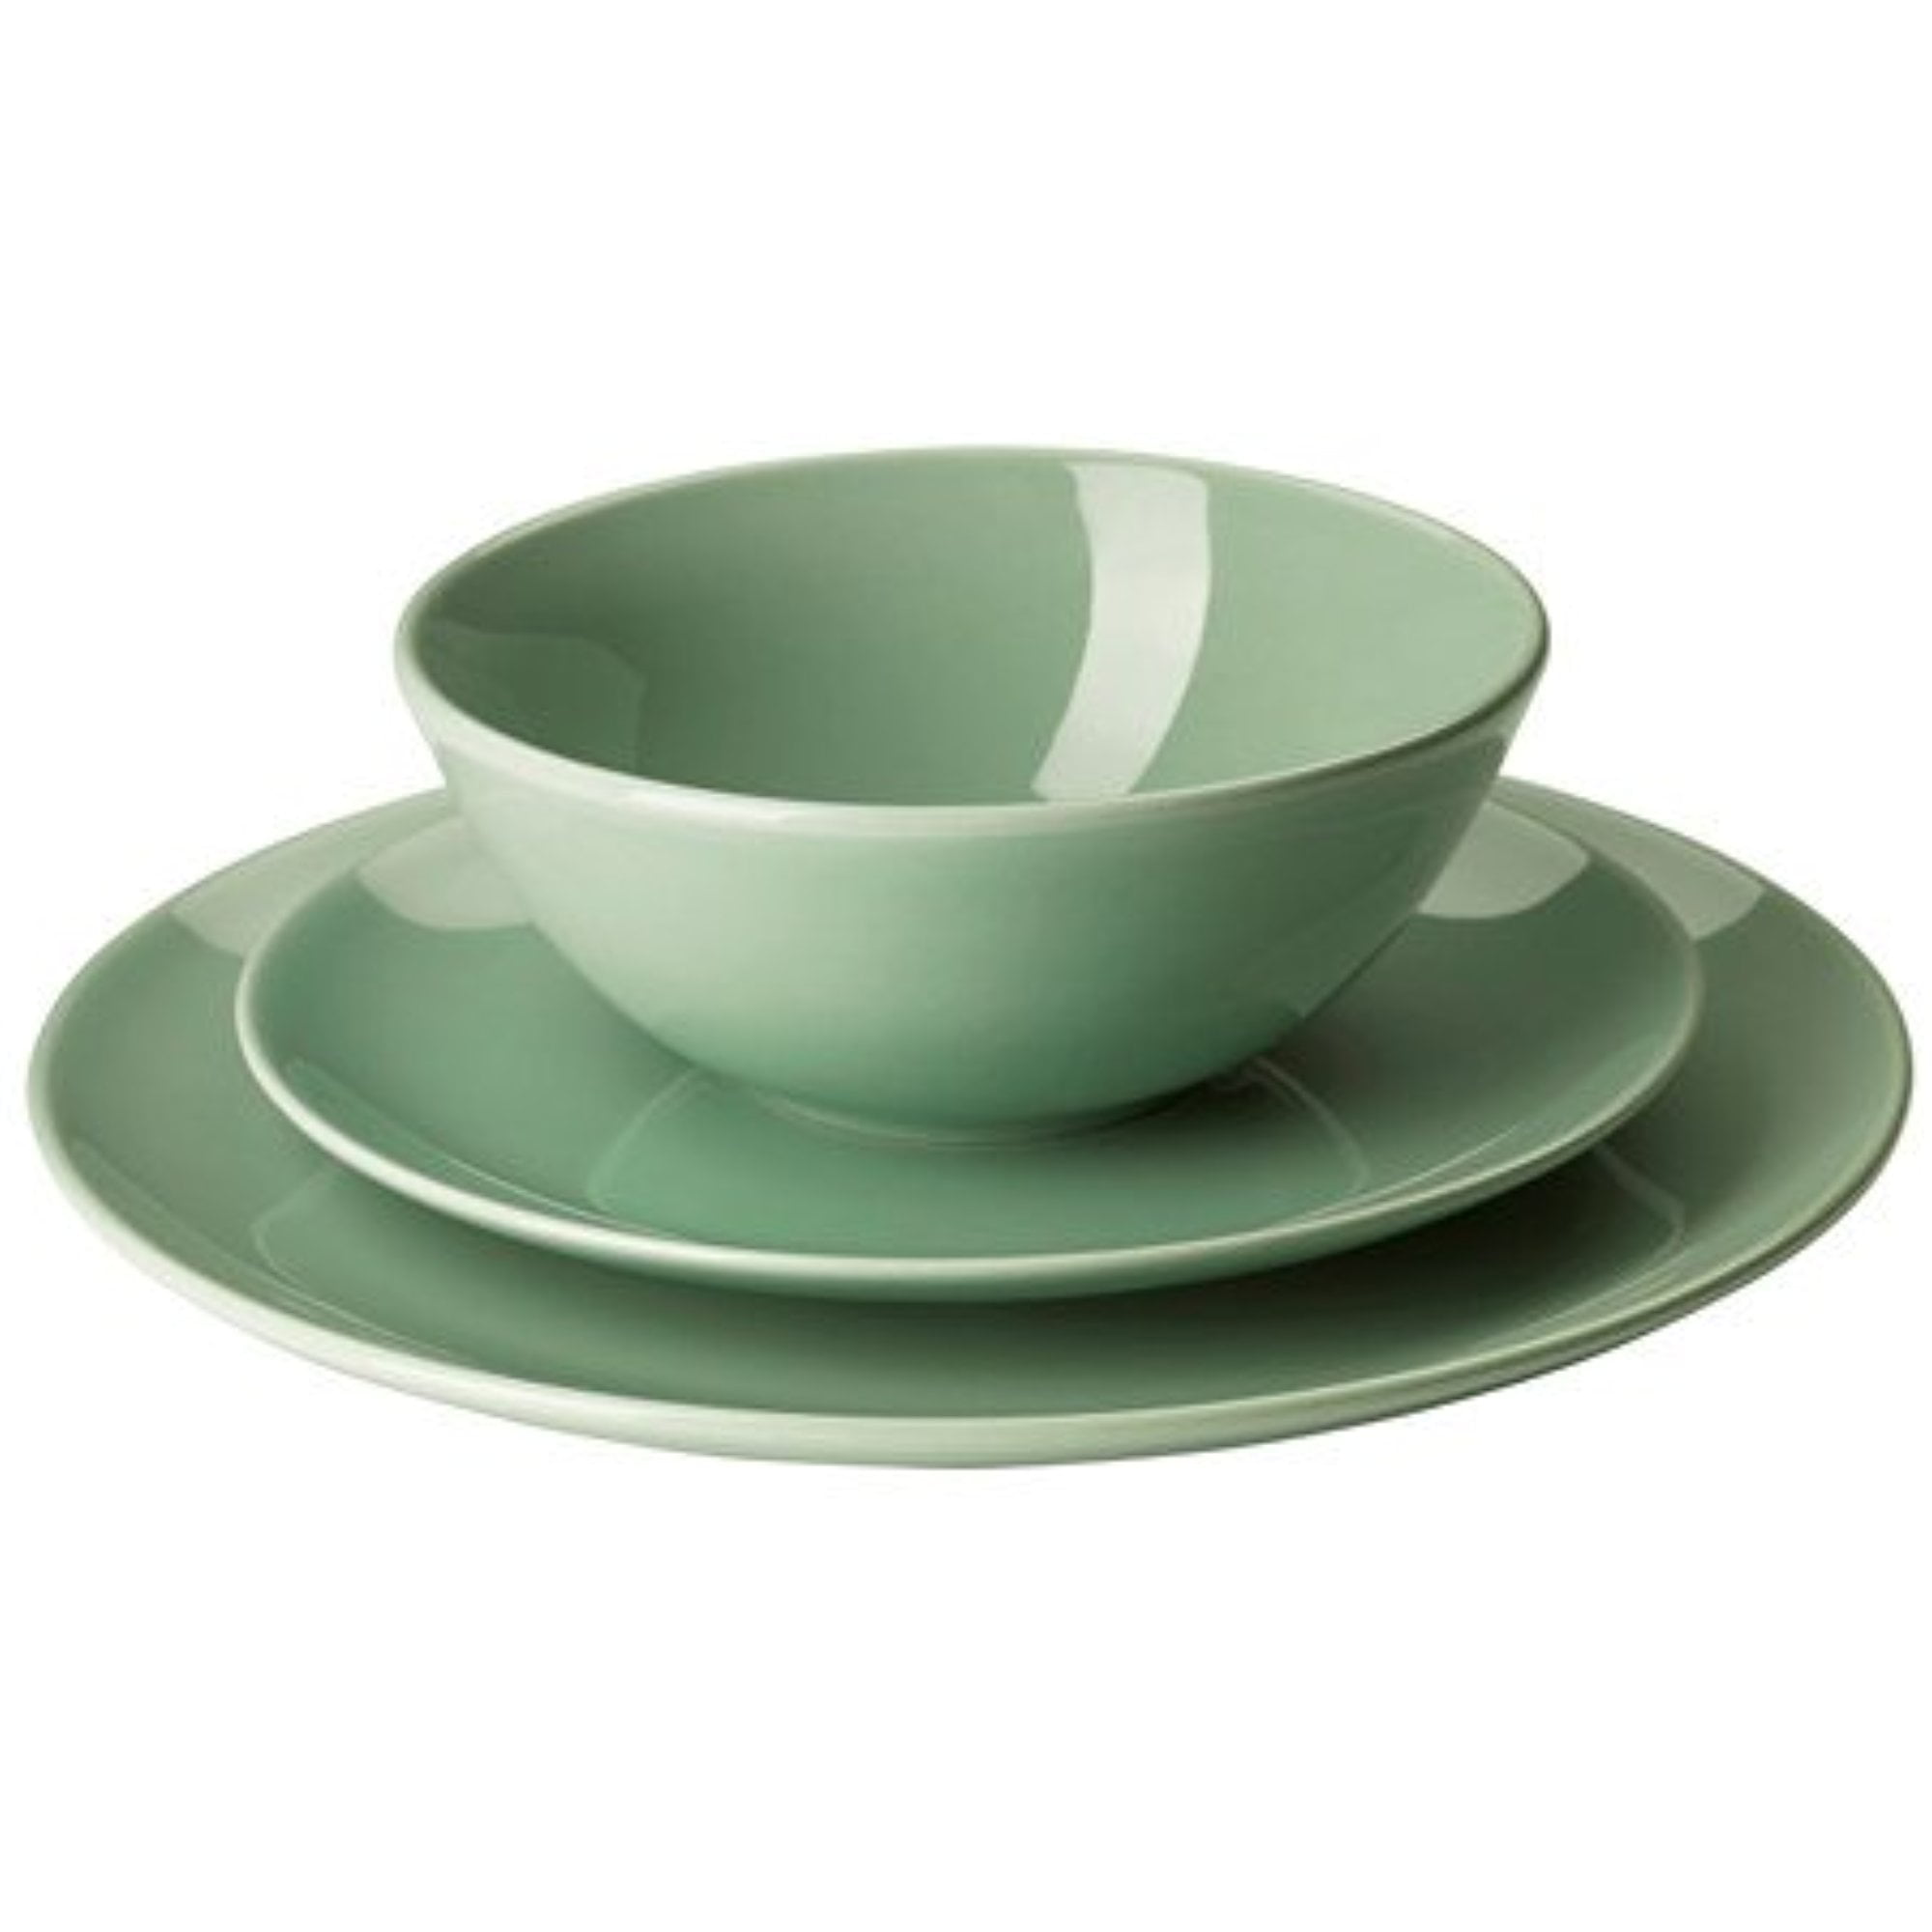 zegen Krijger verlangen IKEA 18-piece dinnerware set, light green 1428.52629.102 - Walmart.com